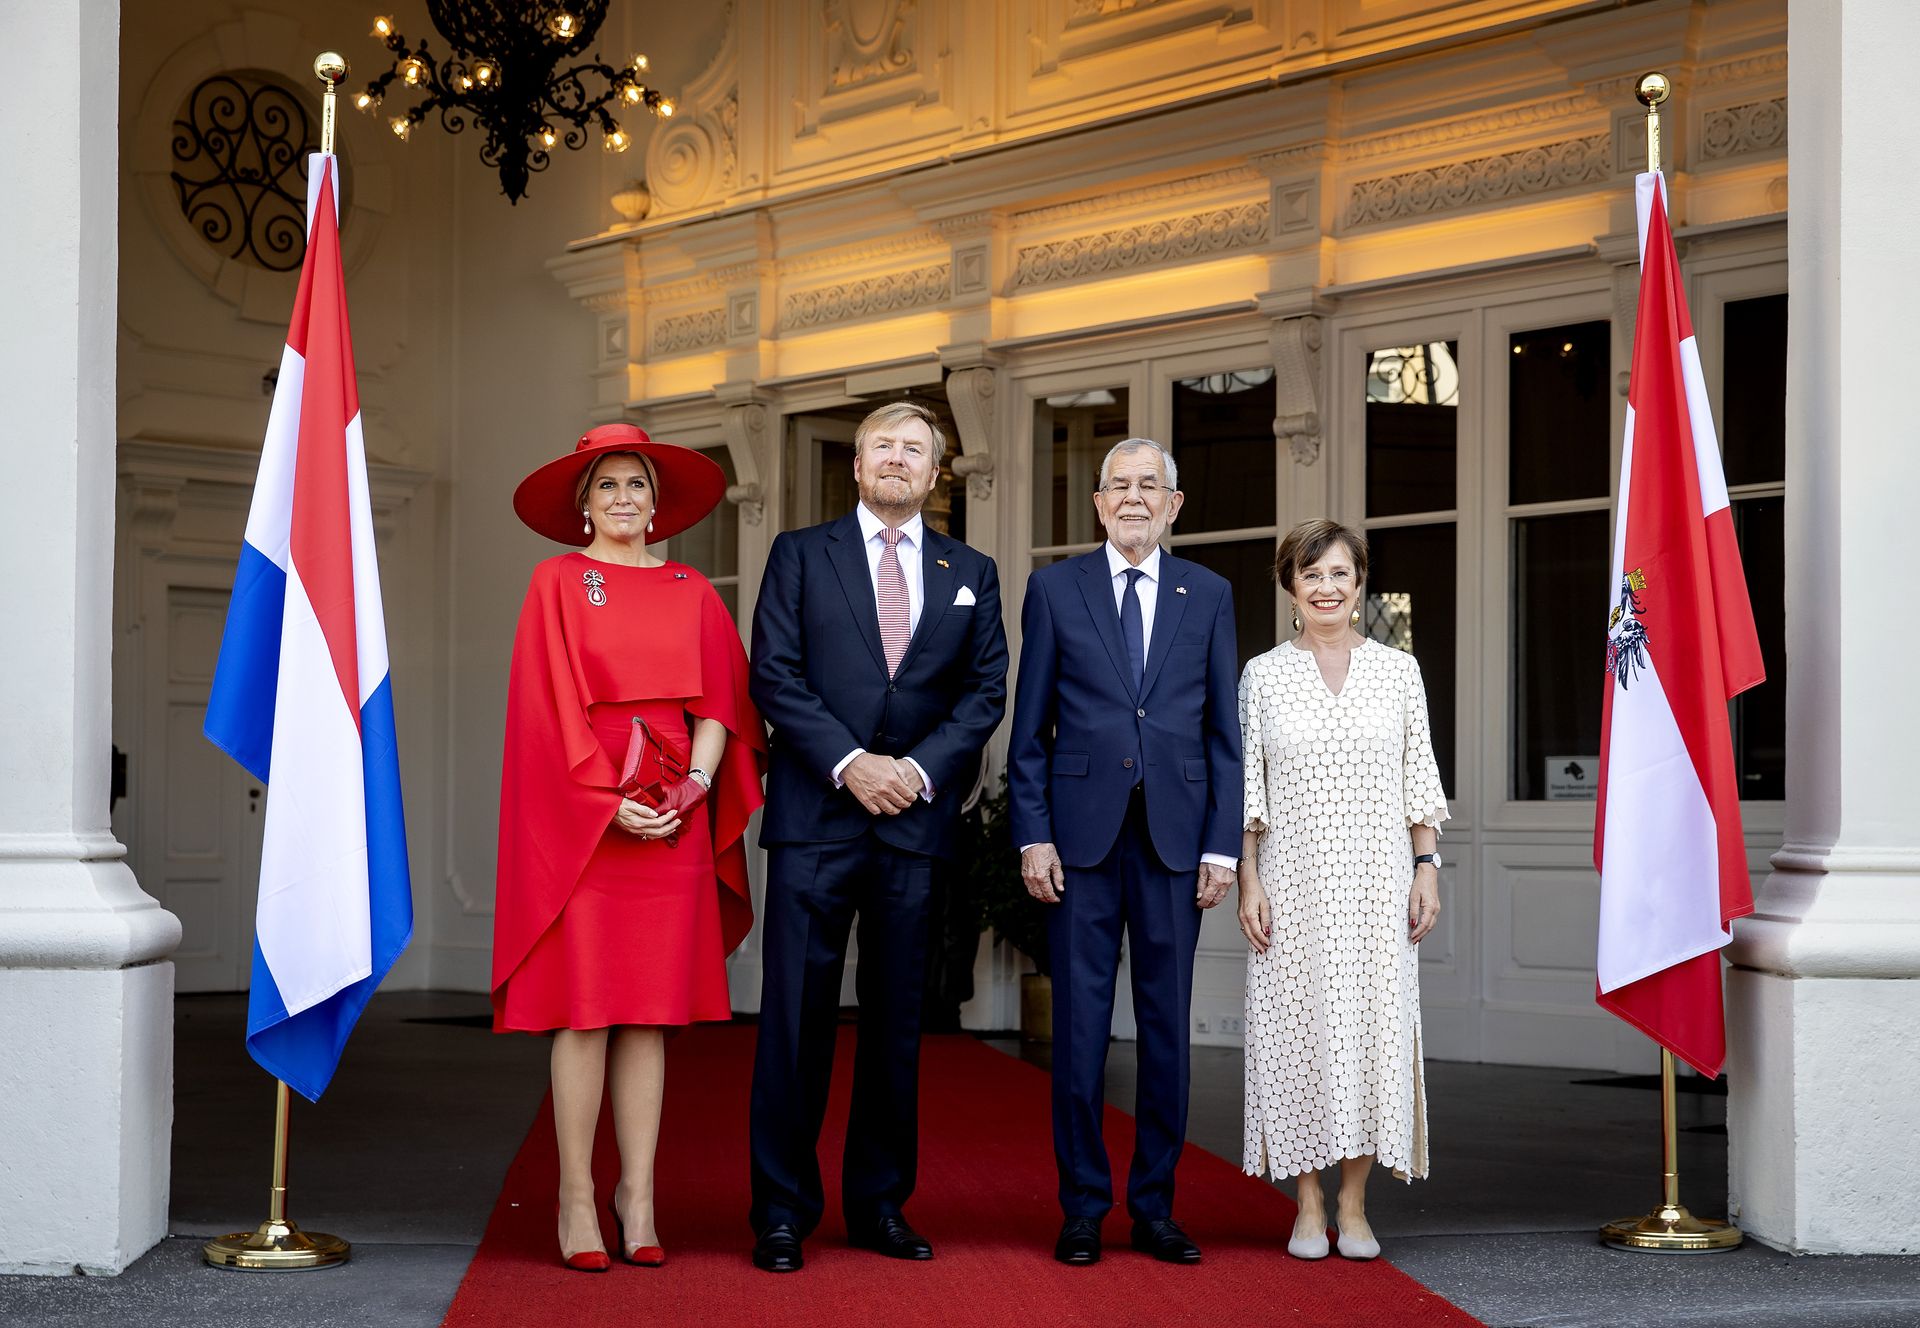 Koningspaar staatsbezoek Oostenrijk 2022